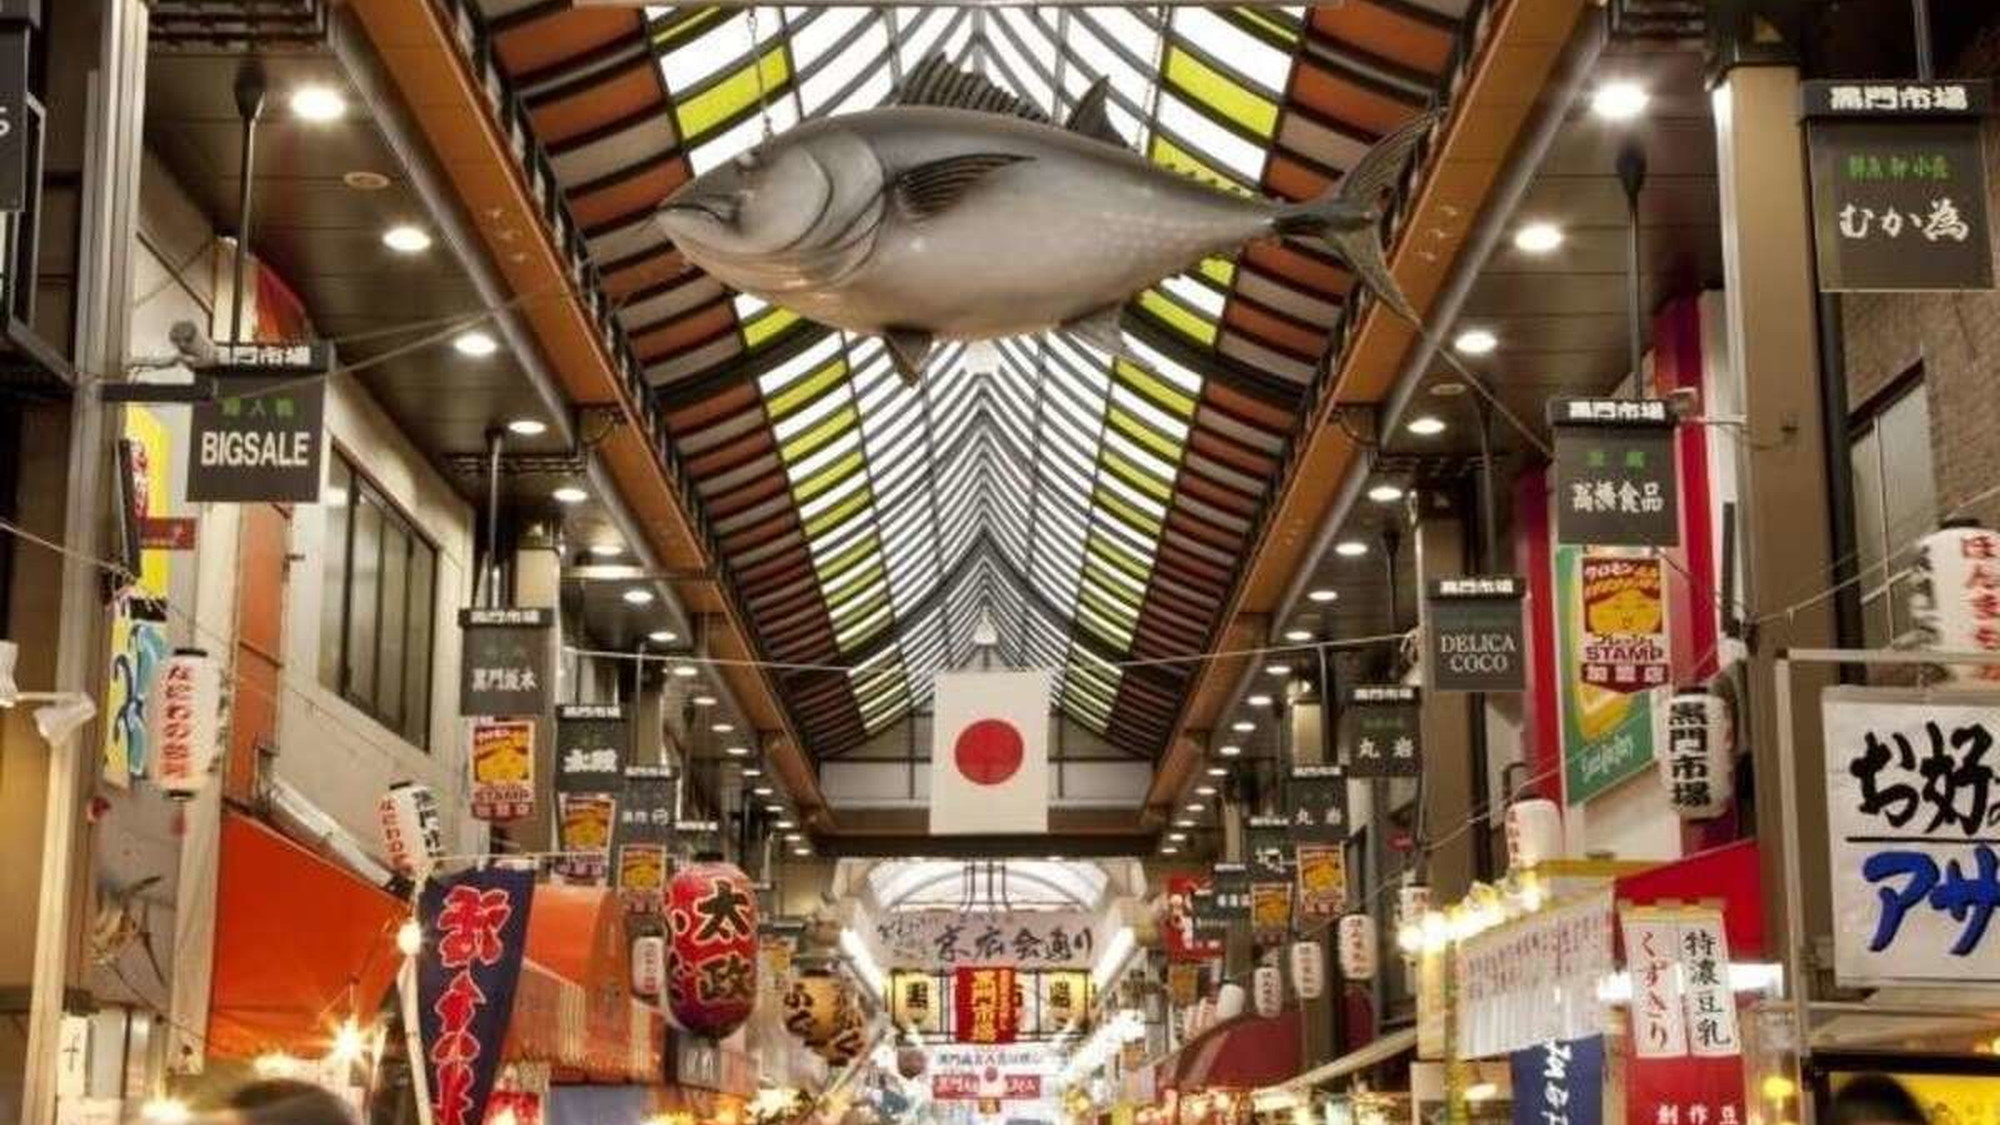 【日本橋】伝統的な日本料理店や居酒屋 さまざまなジャンルの飲食店が並ぶ黒門市場。